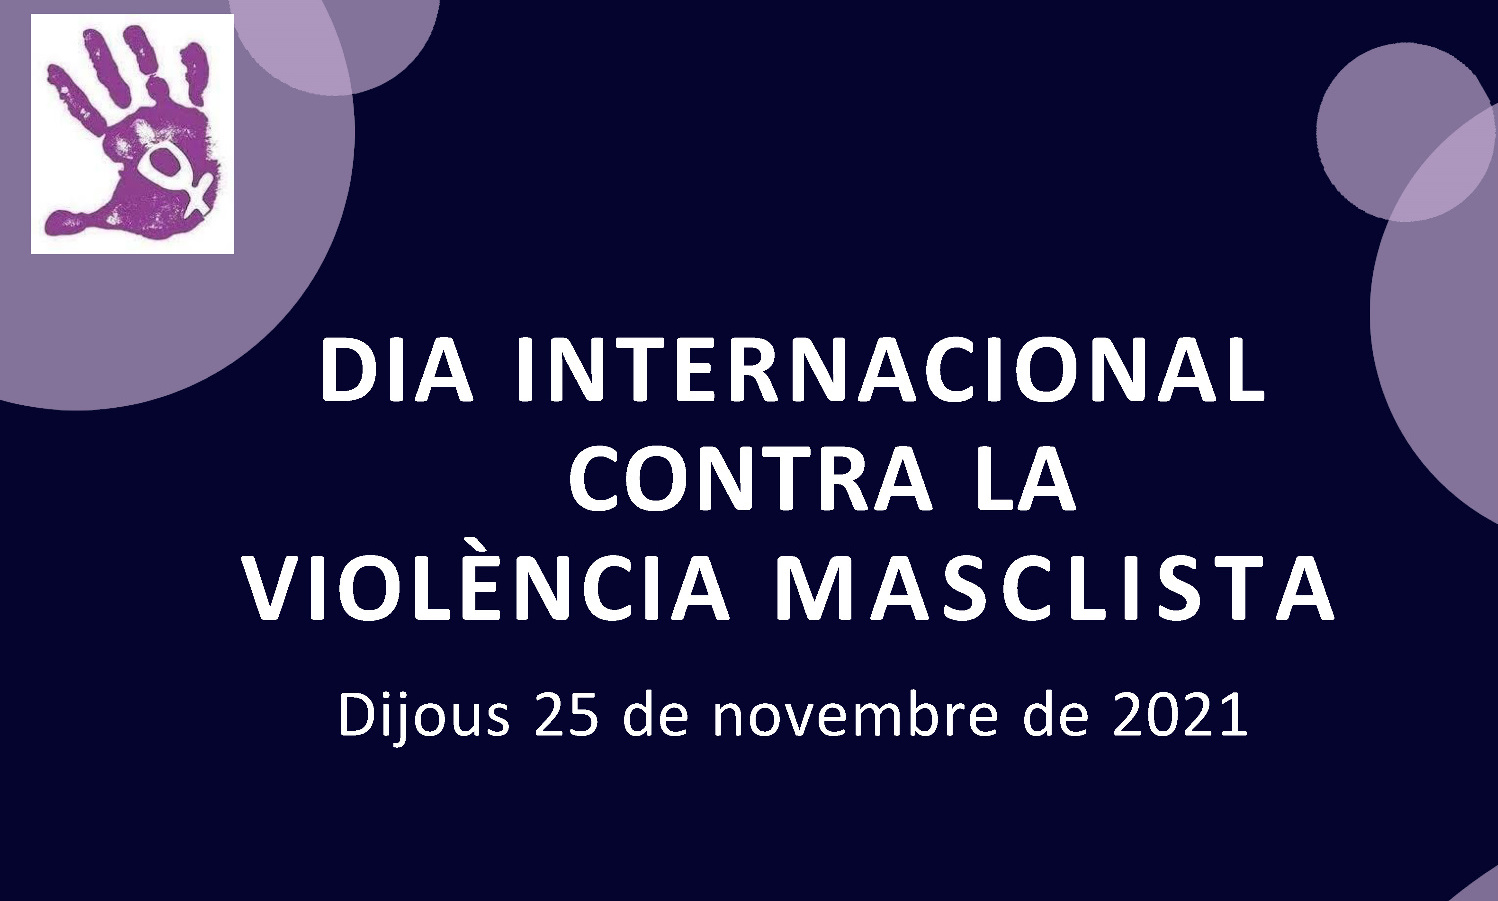 25 de novembre, Dia Internacional per a l'Eliminació de la Violència envers les Dones